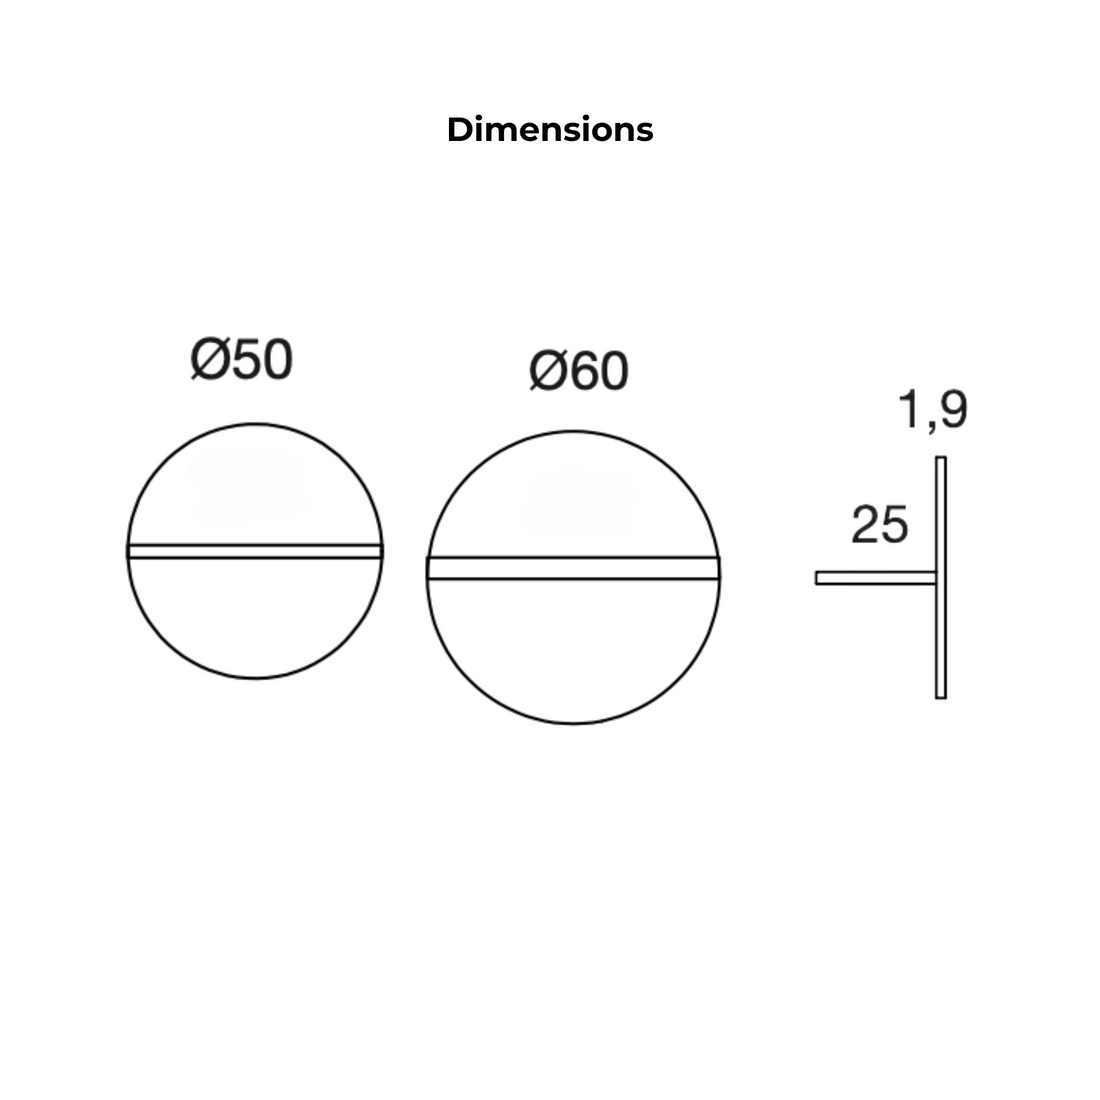 MOBENIA Bubble Shelf dimensions